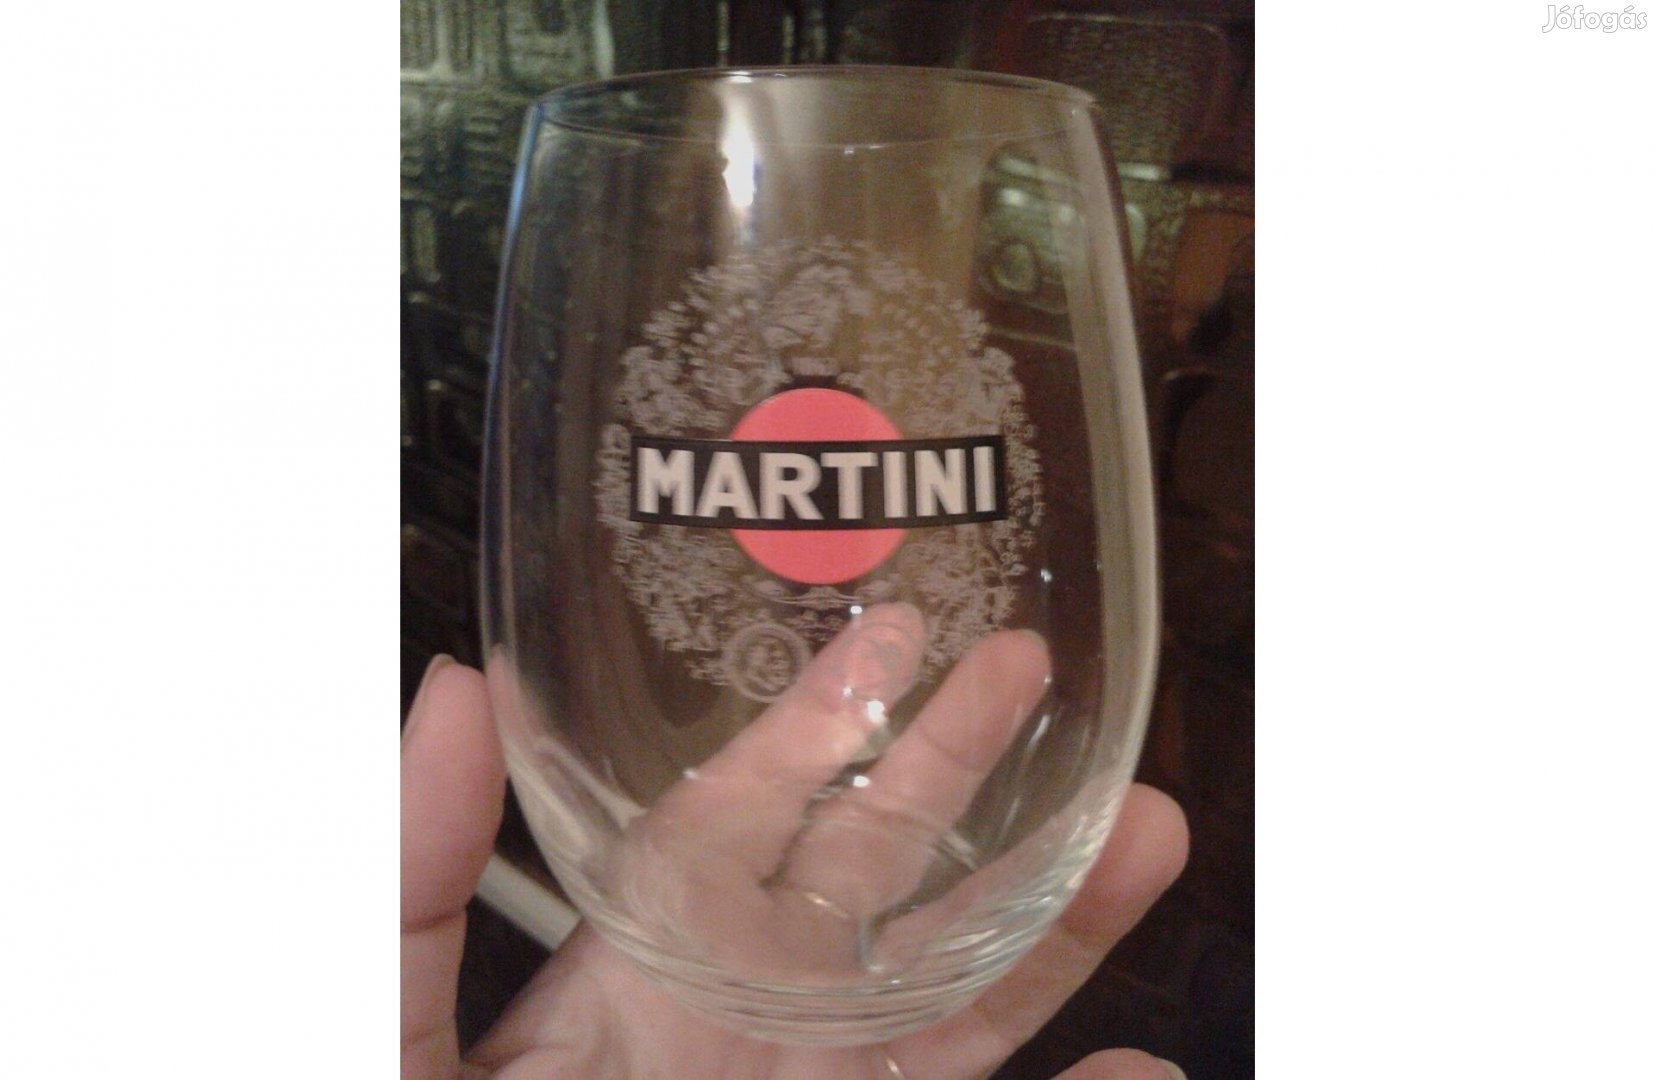 1 db Martinis öblös kifogástalan állapotú ritka üveg pohár 1 800 Ft